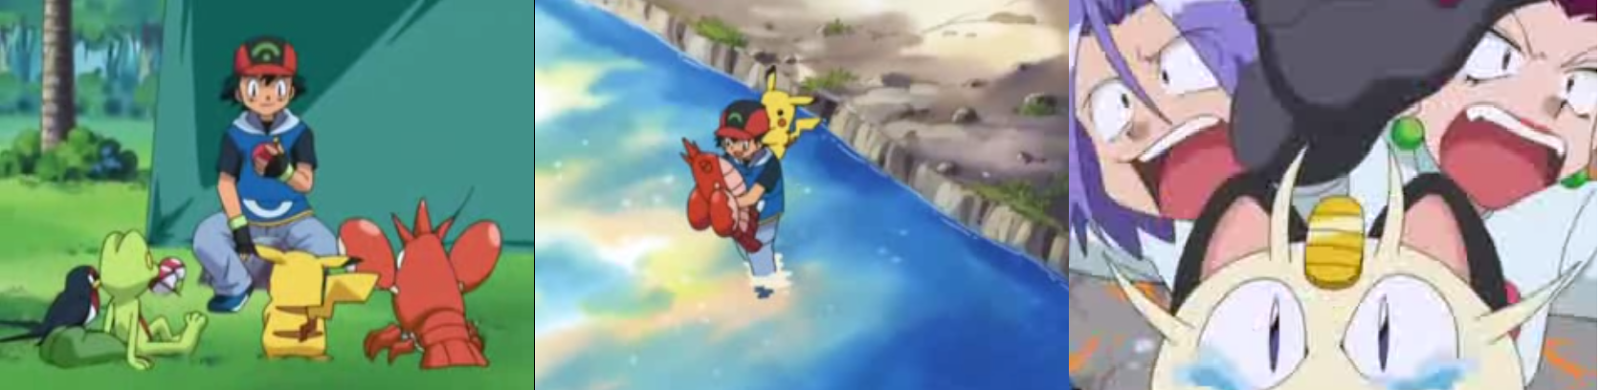 Pokemon Capitulo 24 Temporada 6 Un Corphish Fuera Del Agua